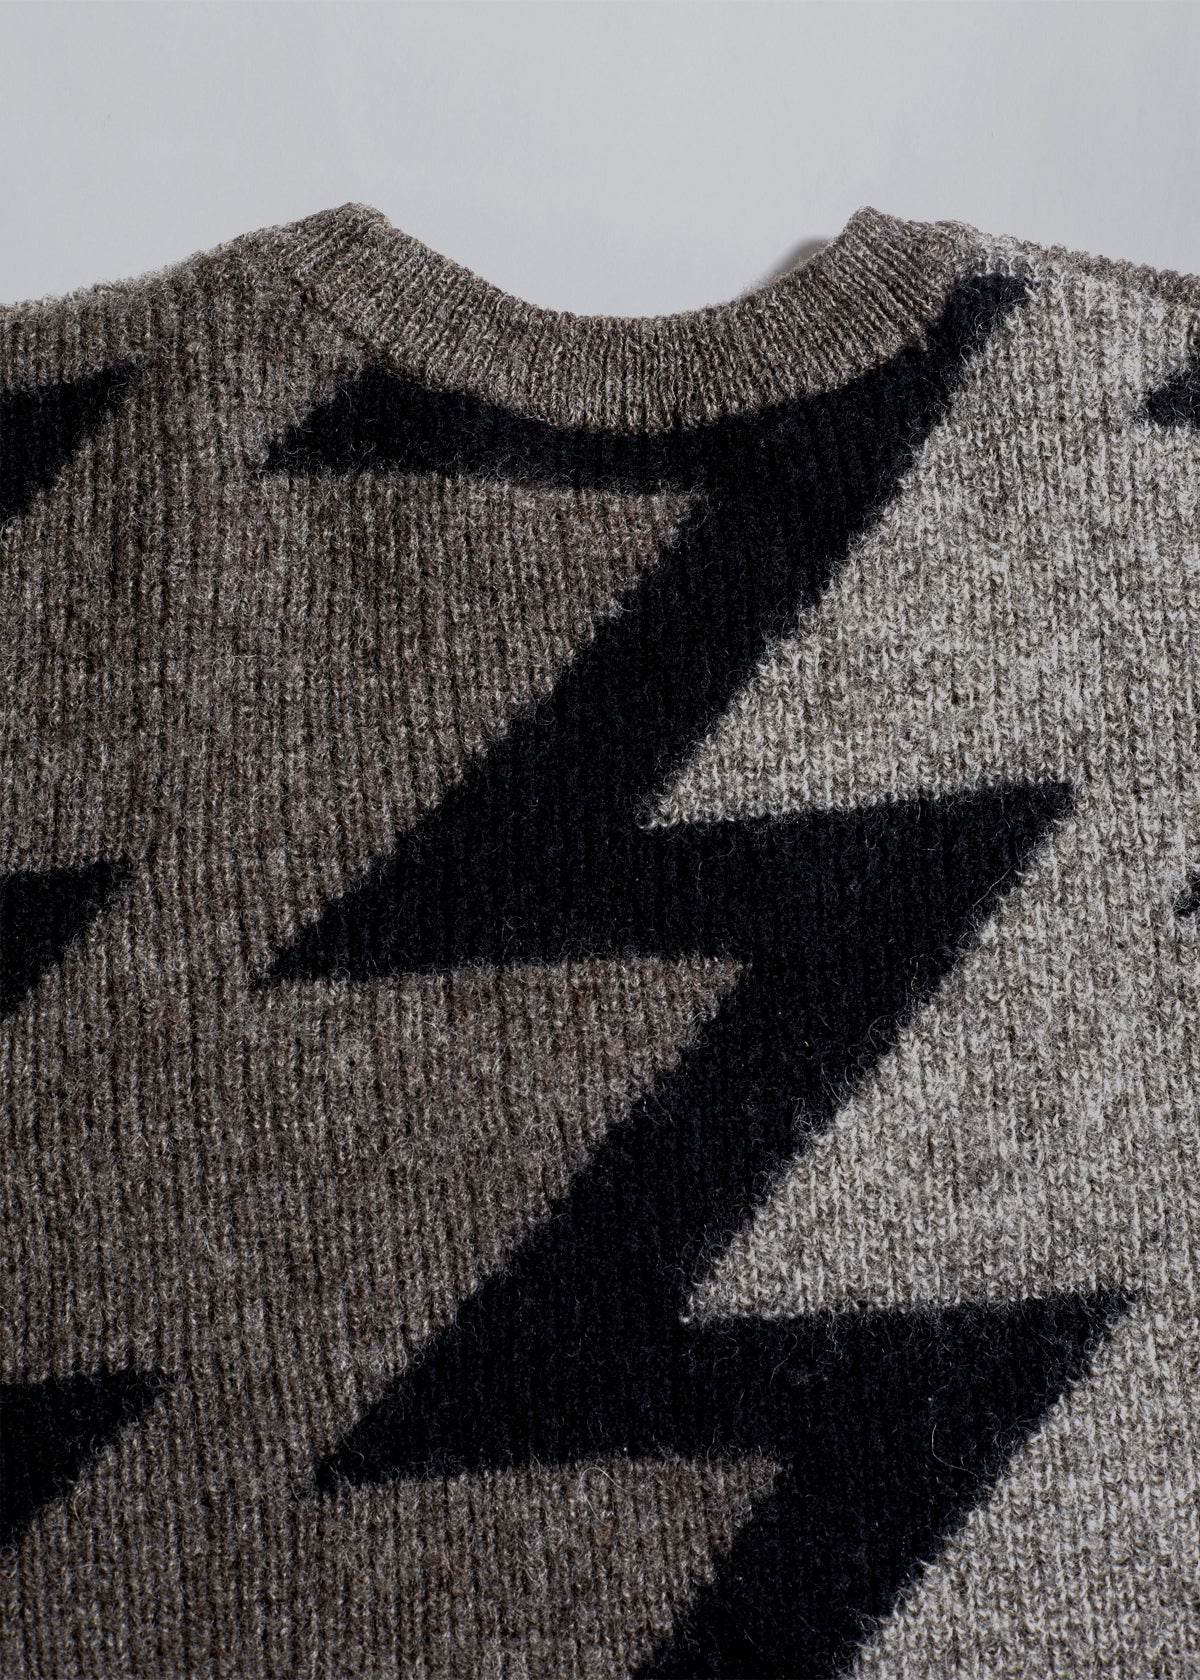 ZigZag Pattern Wool Crewneck Knit 1980's - Medium